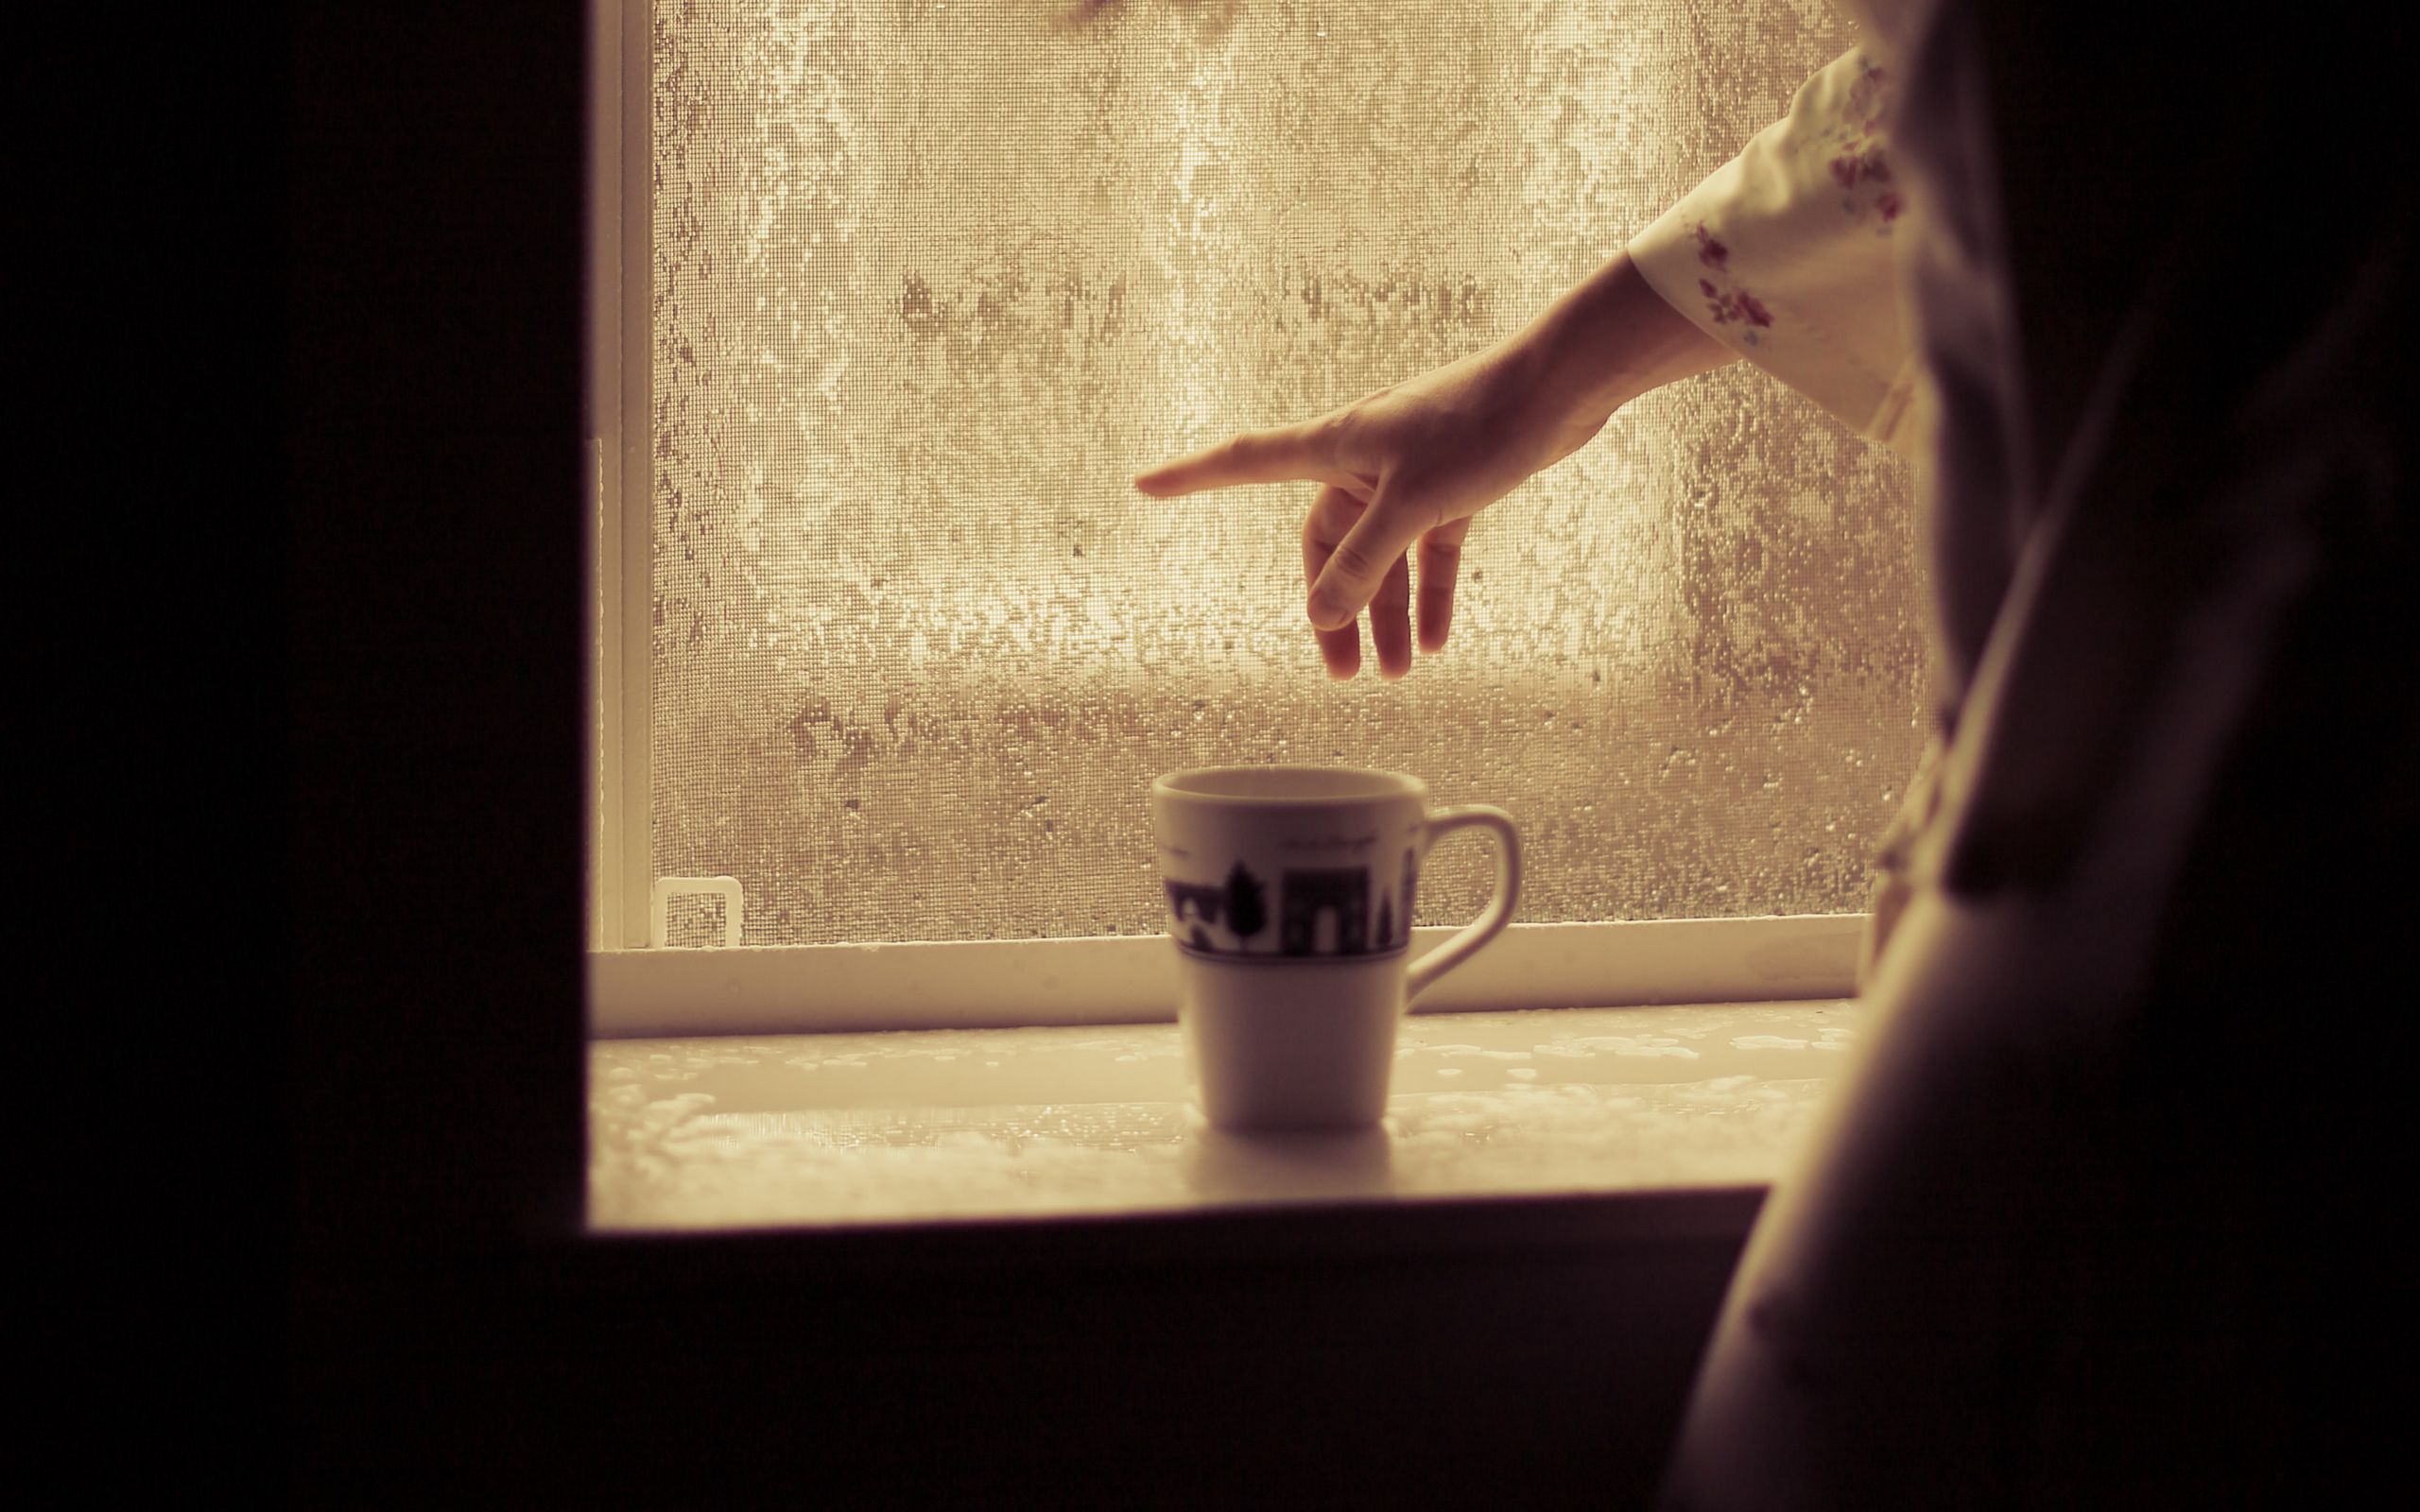 Разве можно быть такой размазней чашка стоит. Чашка кофе на окне. Девушка с чашкой у окна. Девушка с кофе у окна. Ltdeirf e jryf c xfirjq rjat.